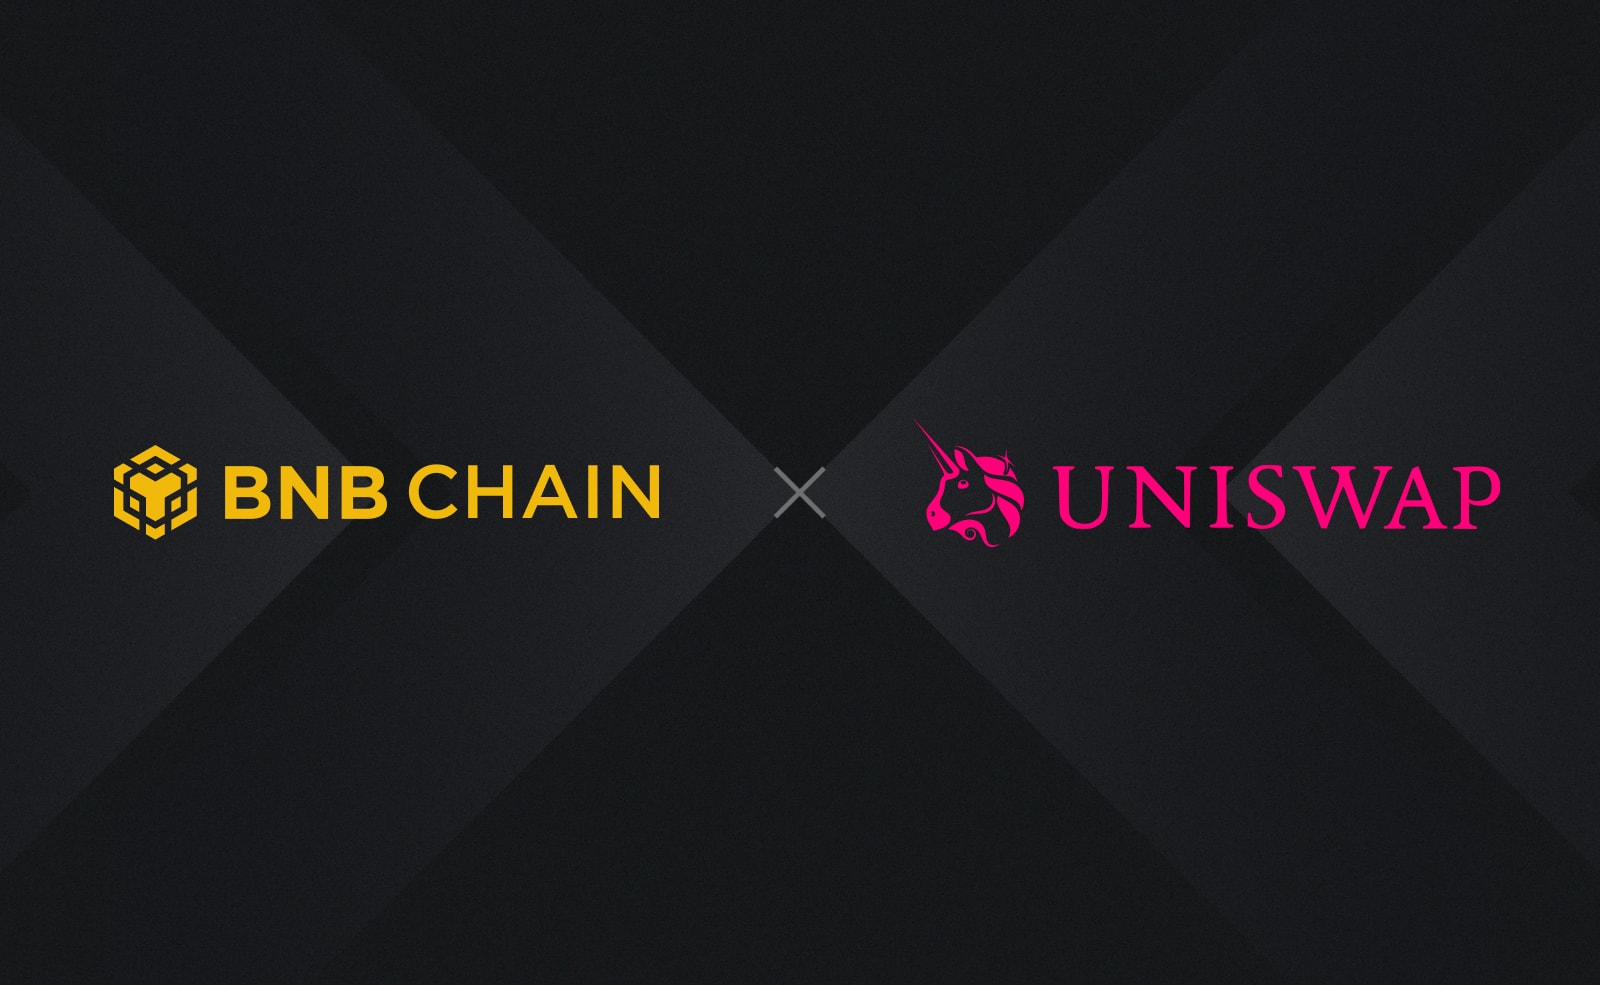 Сообщество Uniswap одобрило интеграцию с BNB Chain. Заглавный коллаж новости.